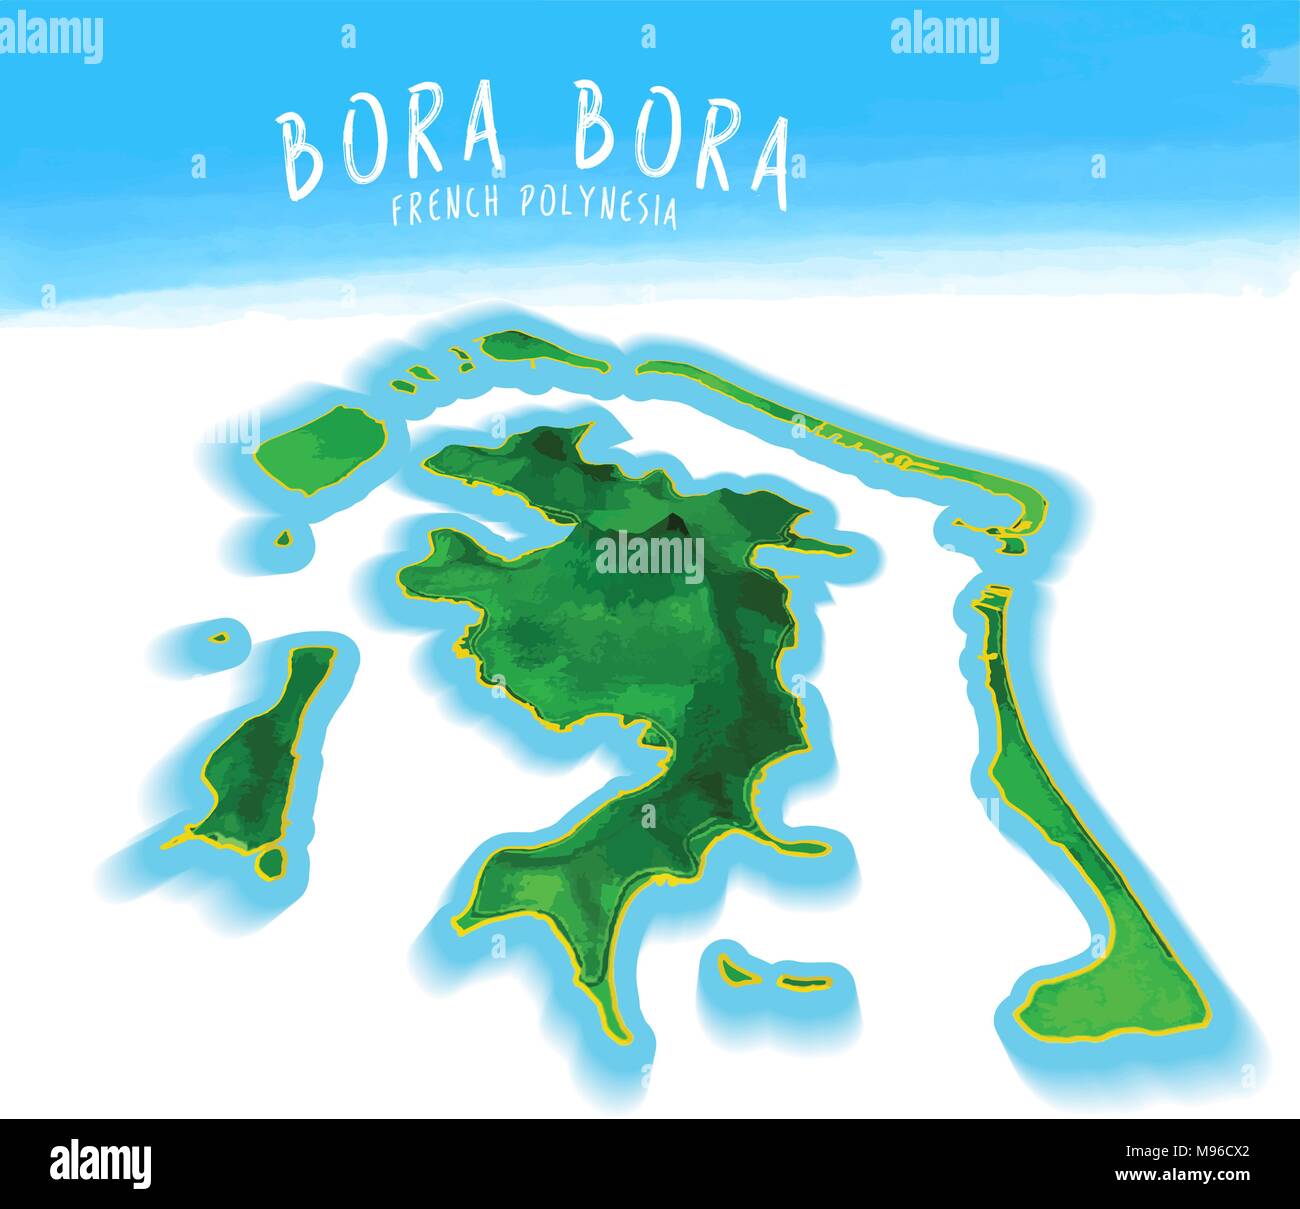 3D Mappa dell'isola di Bora Bora dettagliata illustrazione vettoriale. Concetto isolato per una infografica e marketing. Illustrazione Vettoriale